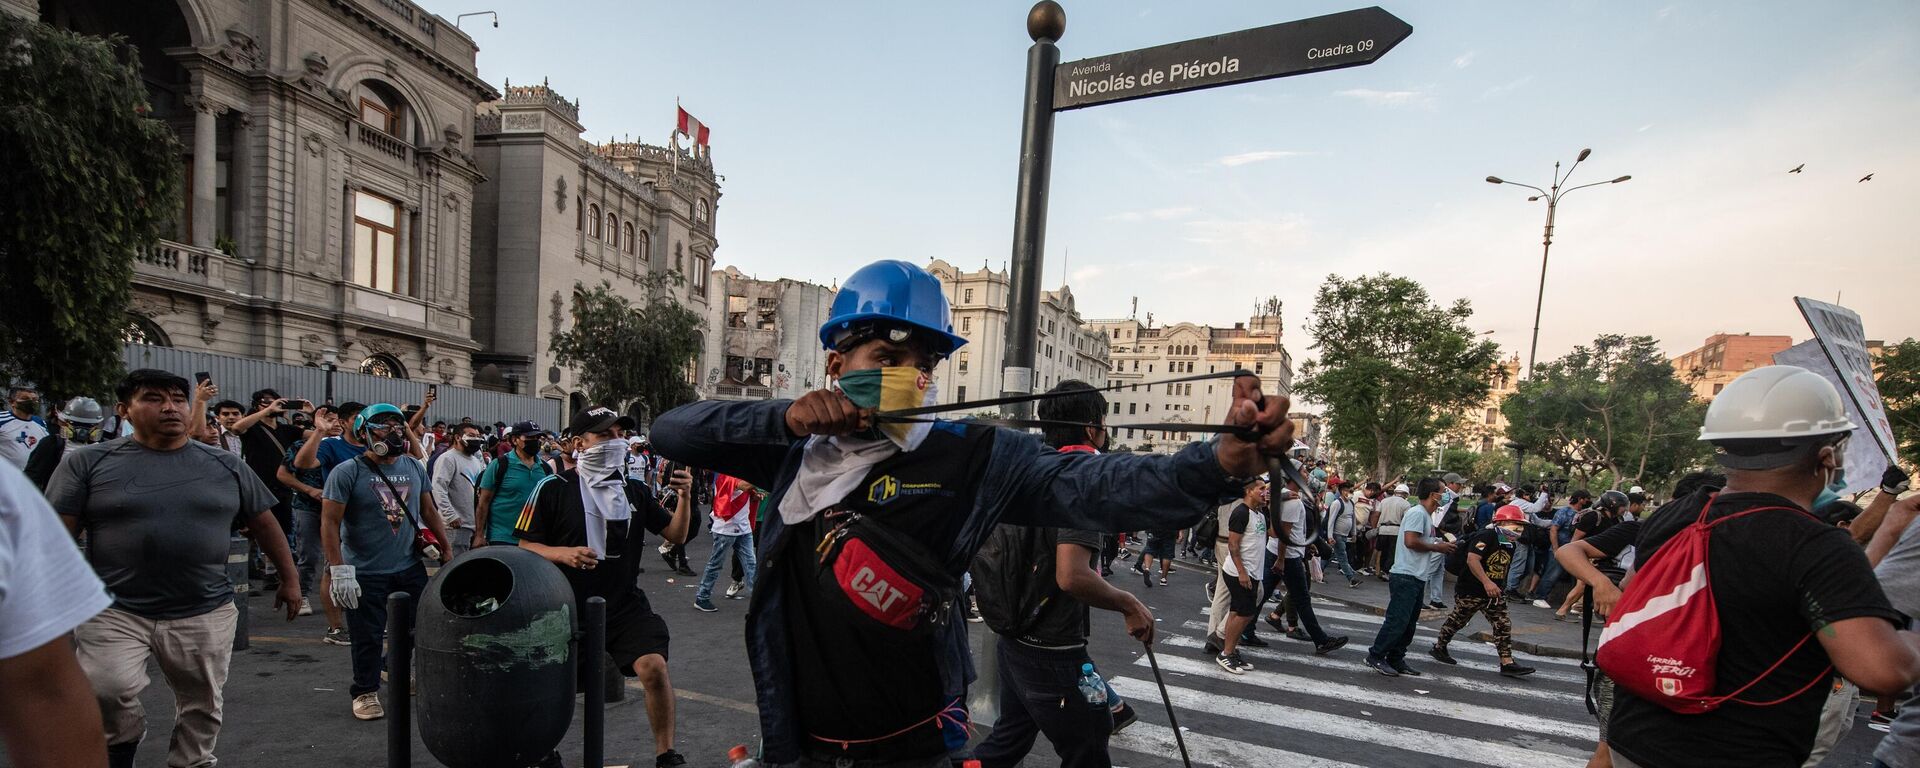 Durante las manifestaciones en Lima, los quejosos han sido hostilizados por la policía con gas lacrimógeno y proyectiles. - Sputnik Mundo, 1920, 13.07.2023